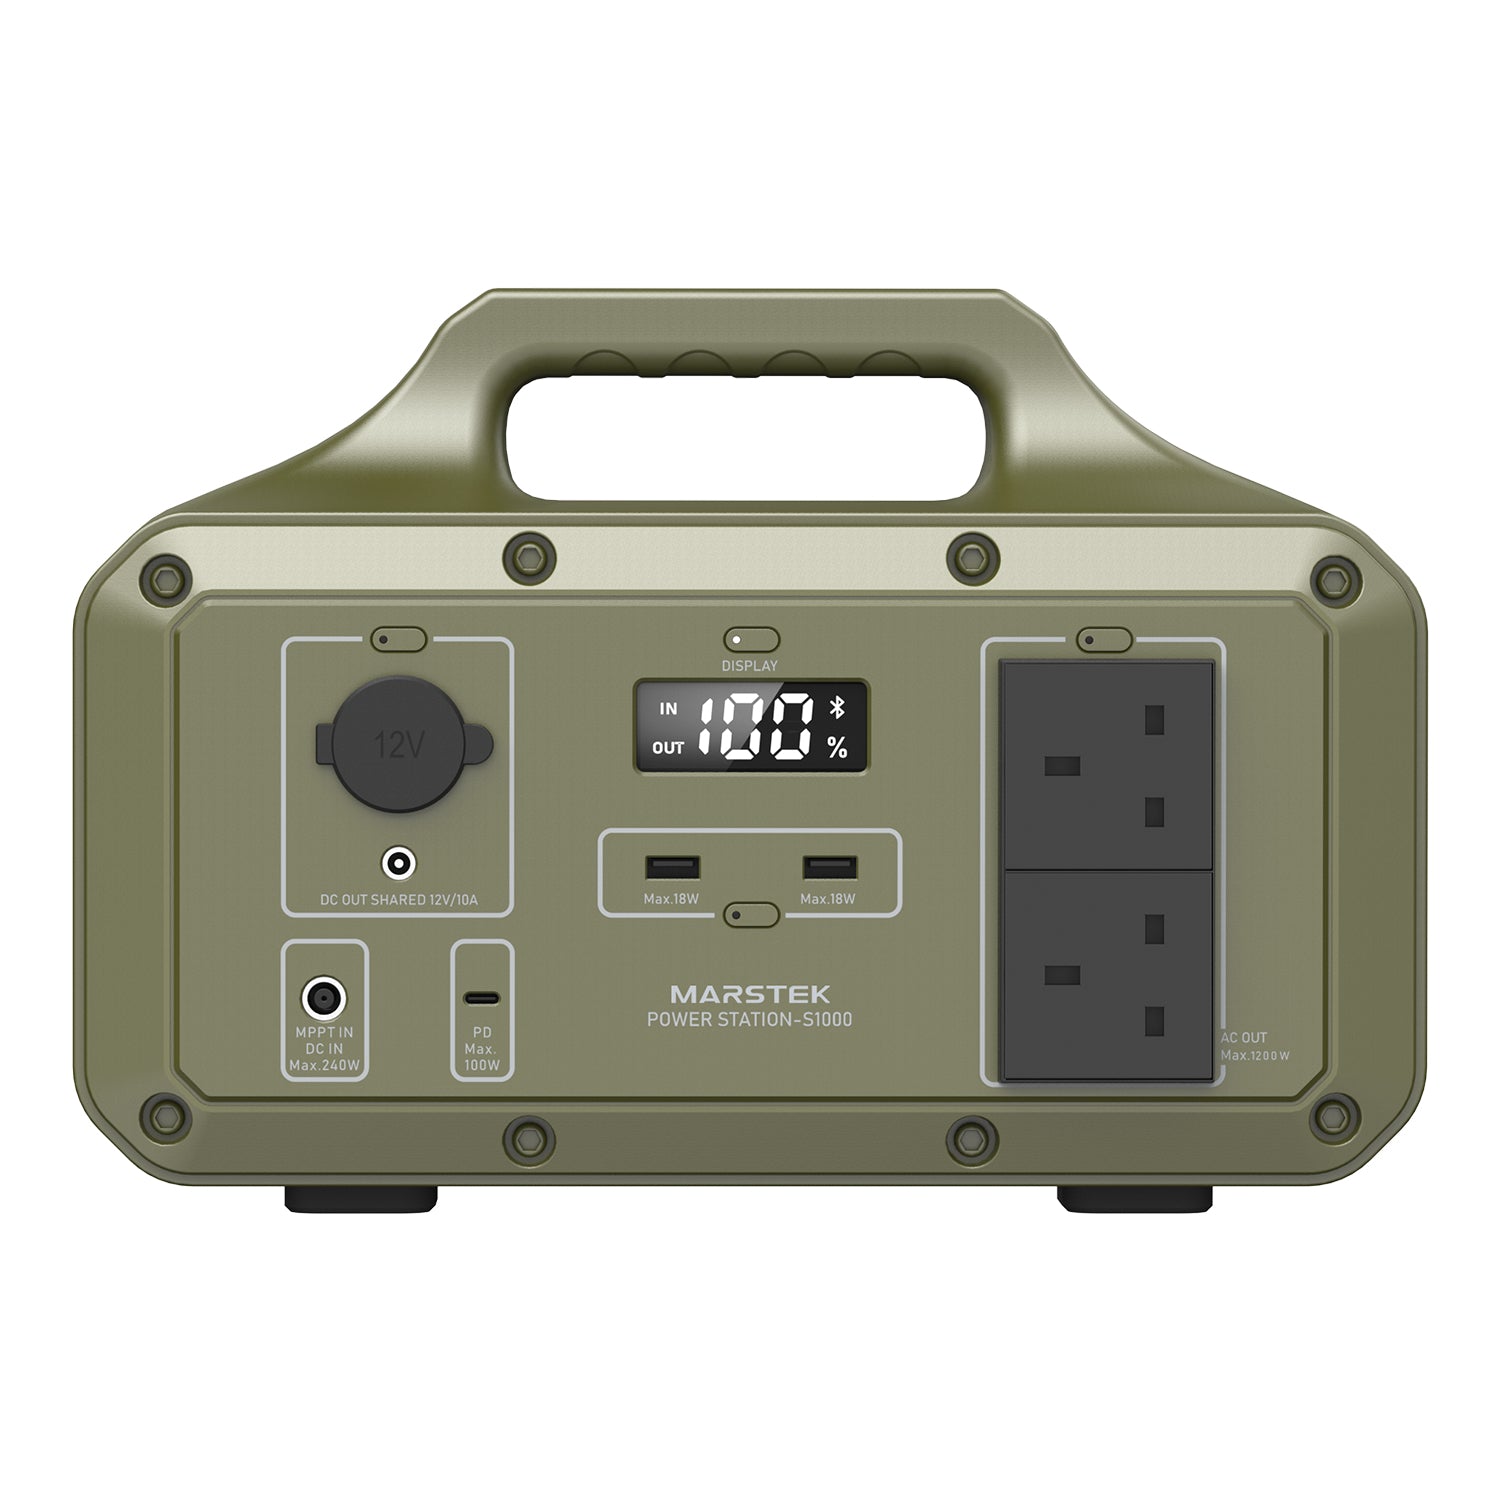 Centrale elettrica portatile serie Saturn S300F/S500F/S1000F/S2000F